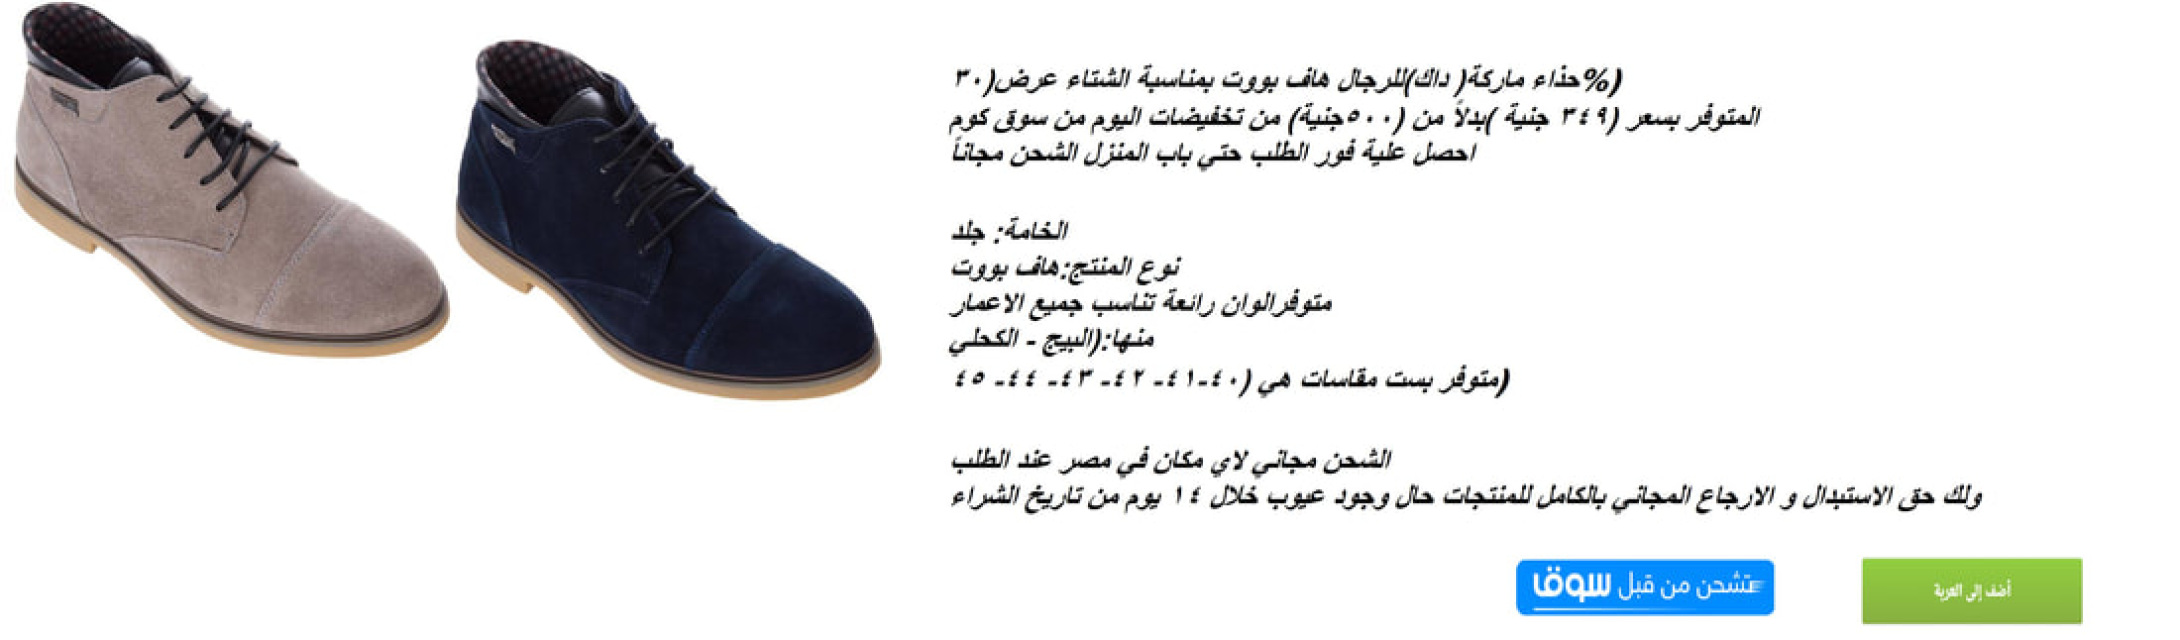 حذاء ماركة داك للرجال هاف بووت بمناسبة الشتاء عرض 30